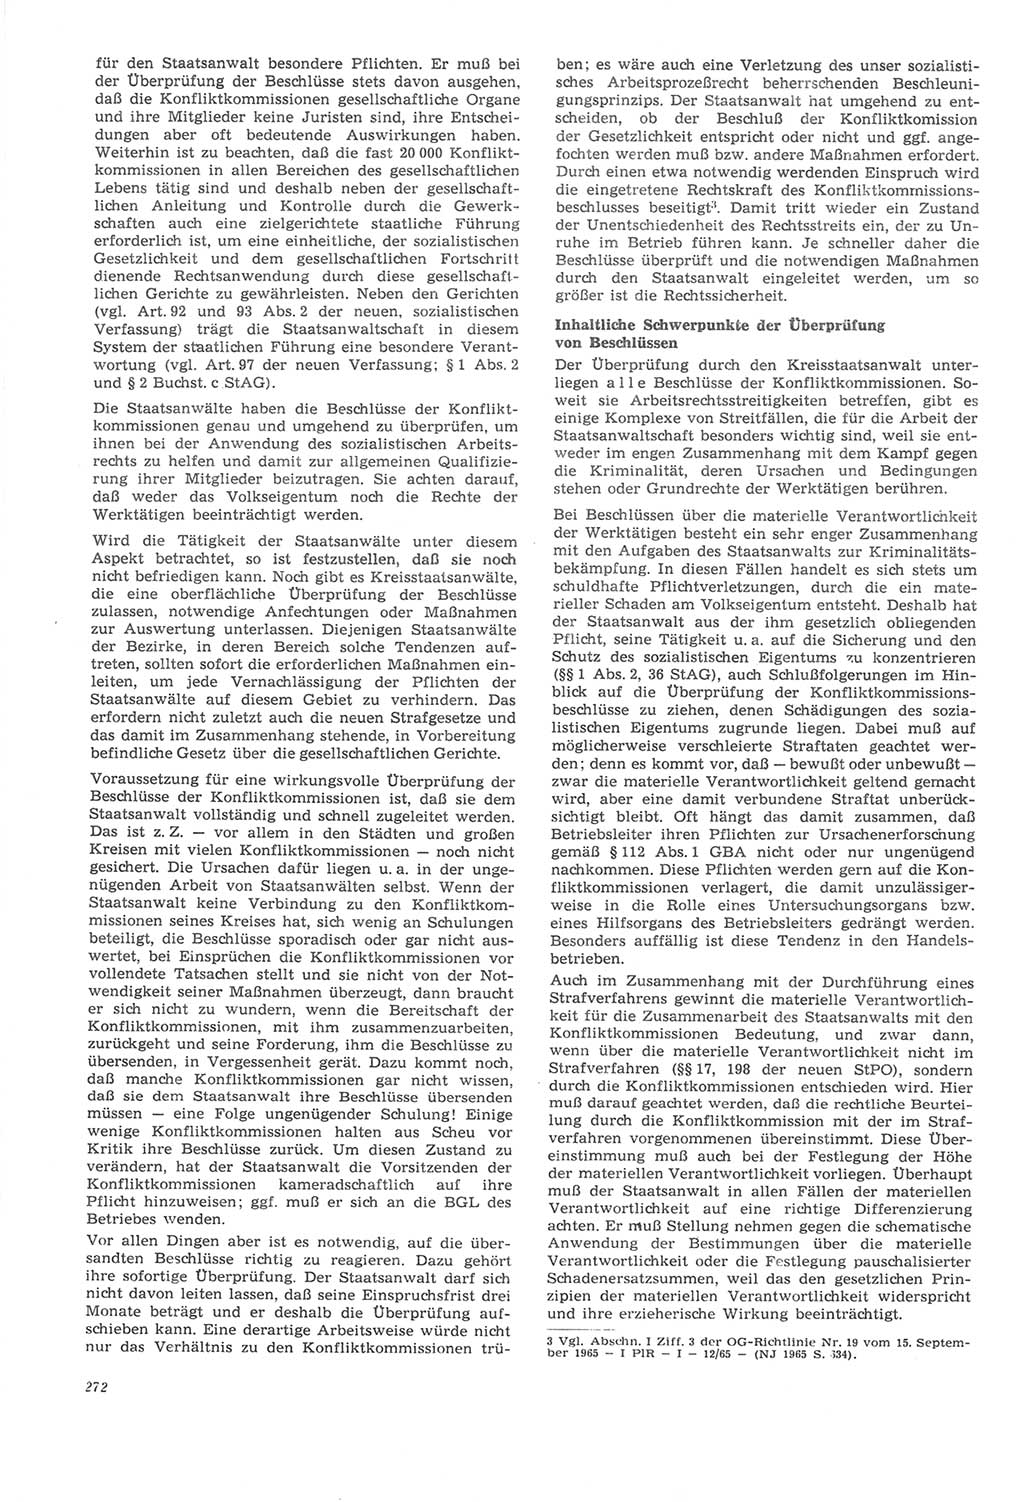 Neue Justiz (NJ), Zeitschrift für Recht und Rechtswissenschaft [Deutsche Demokratische Republik (DDR)], 22. Jahrgang 1968, Seite 272 (NJ DDR 1968, S. 272)